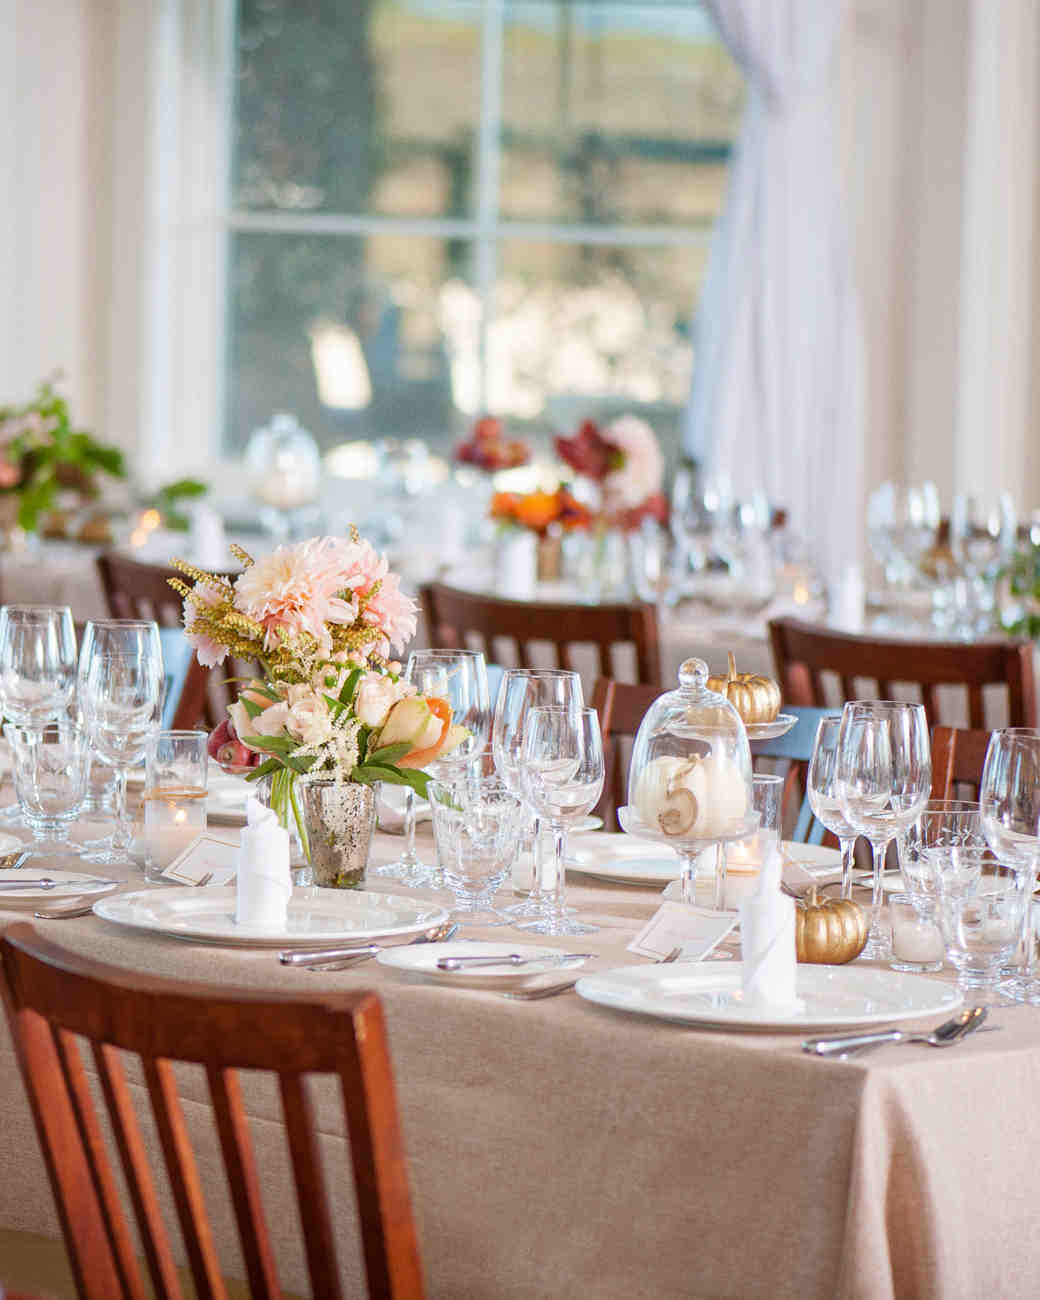 A Crafty Vineyard Wedding in Tiburon, California | Martha Stewart Weddings